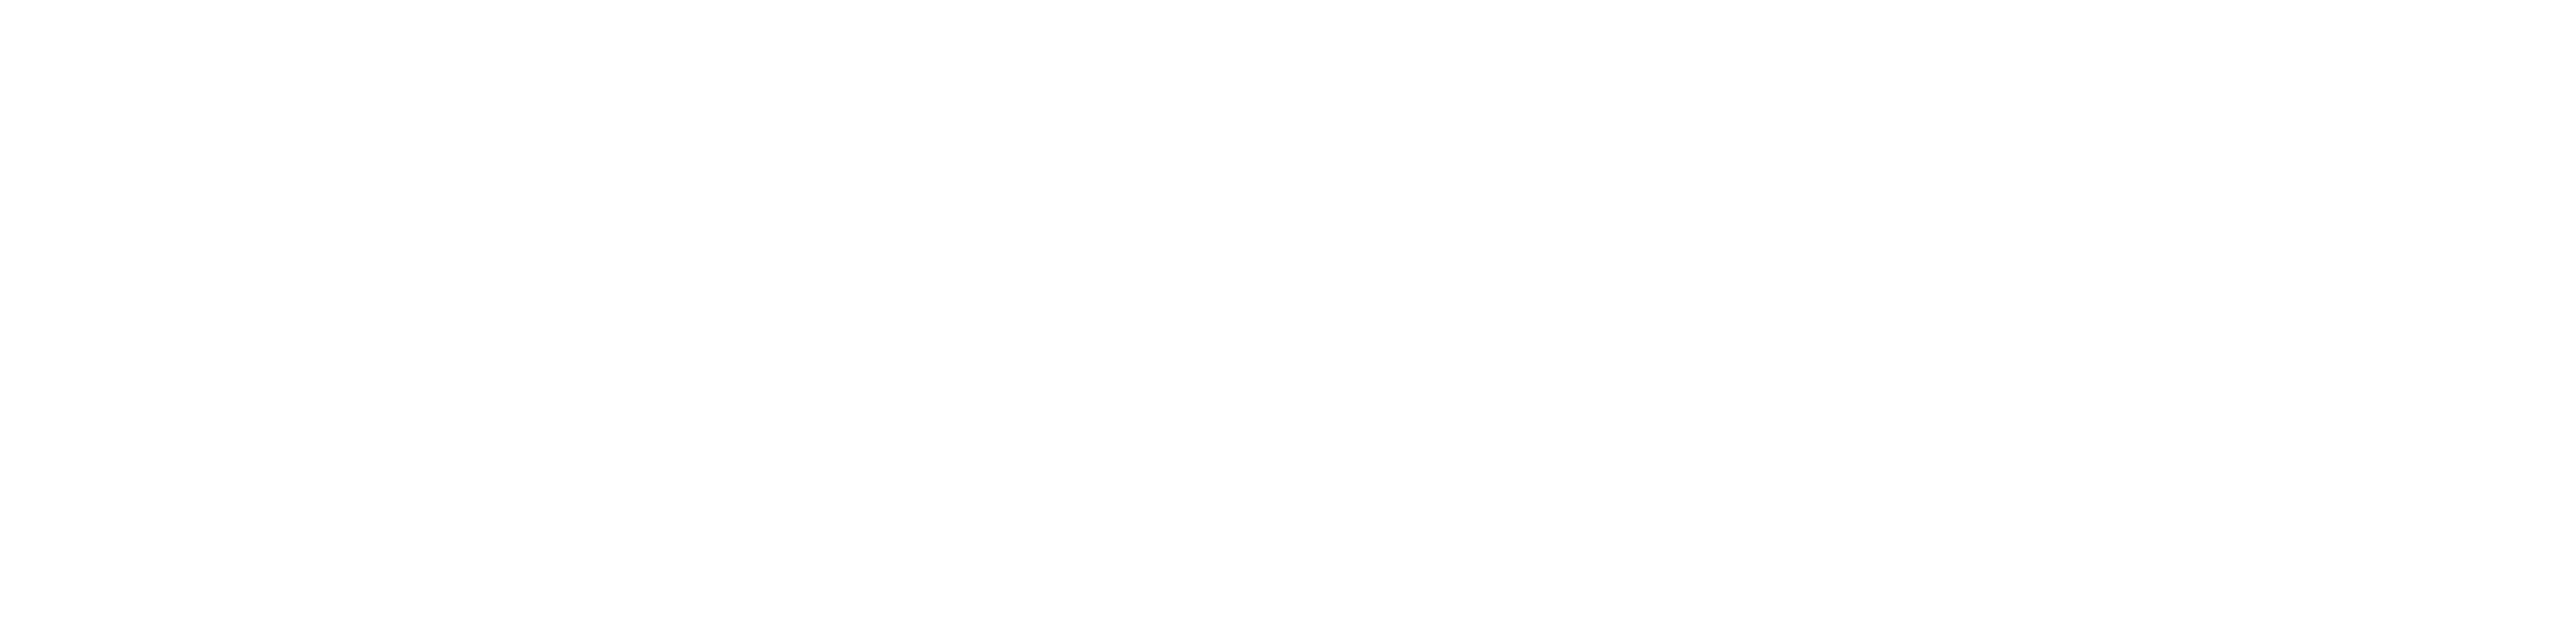 A logo é uma lâmpada estilizada com o um "A" invertido ao centro, ao lado lê-se: "Revista Avant - Revista Acadêmica da Graduação em Direito da UFSC".